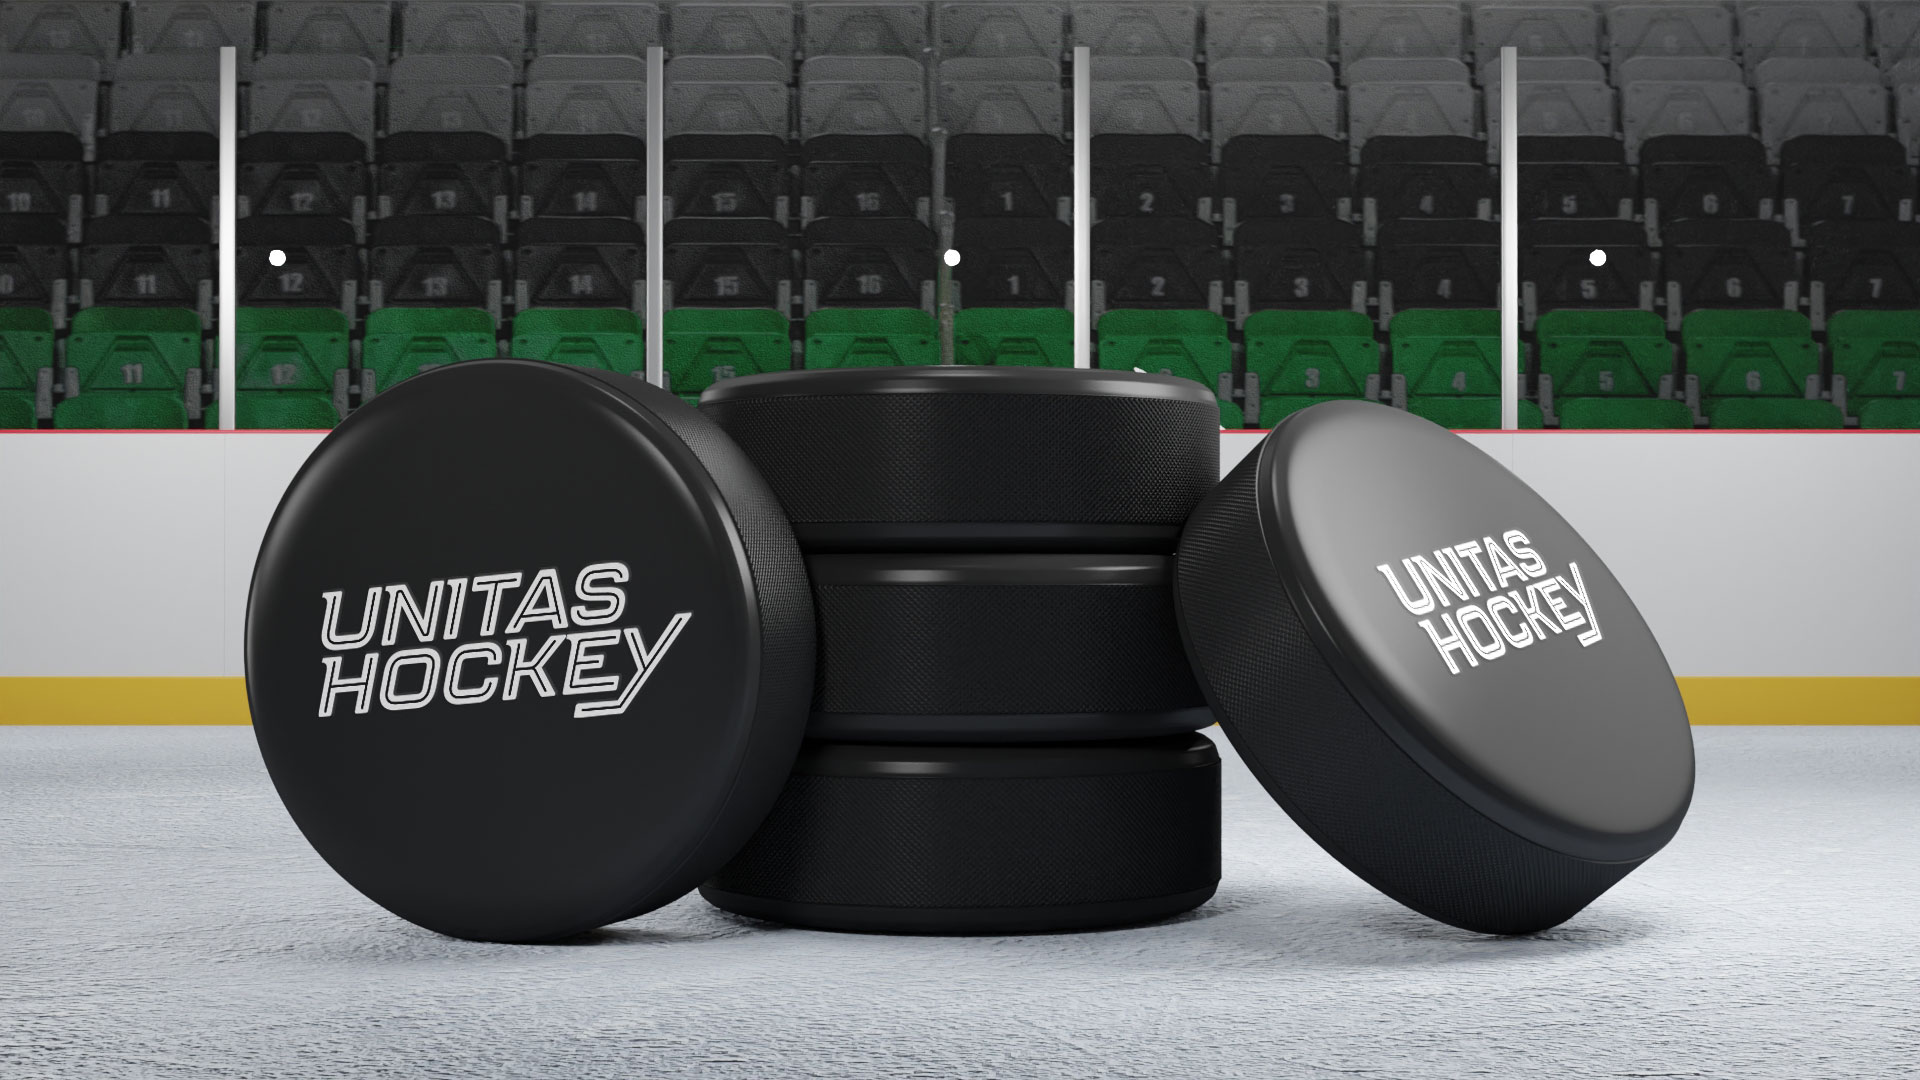 unitas hockey puck 3D render